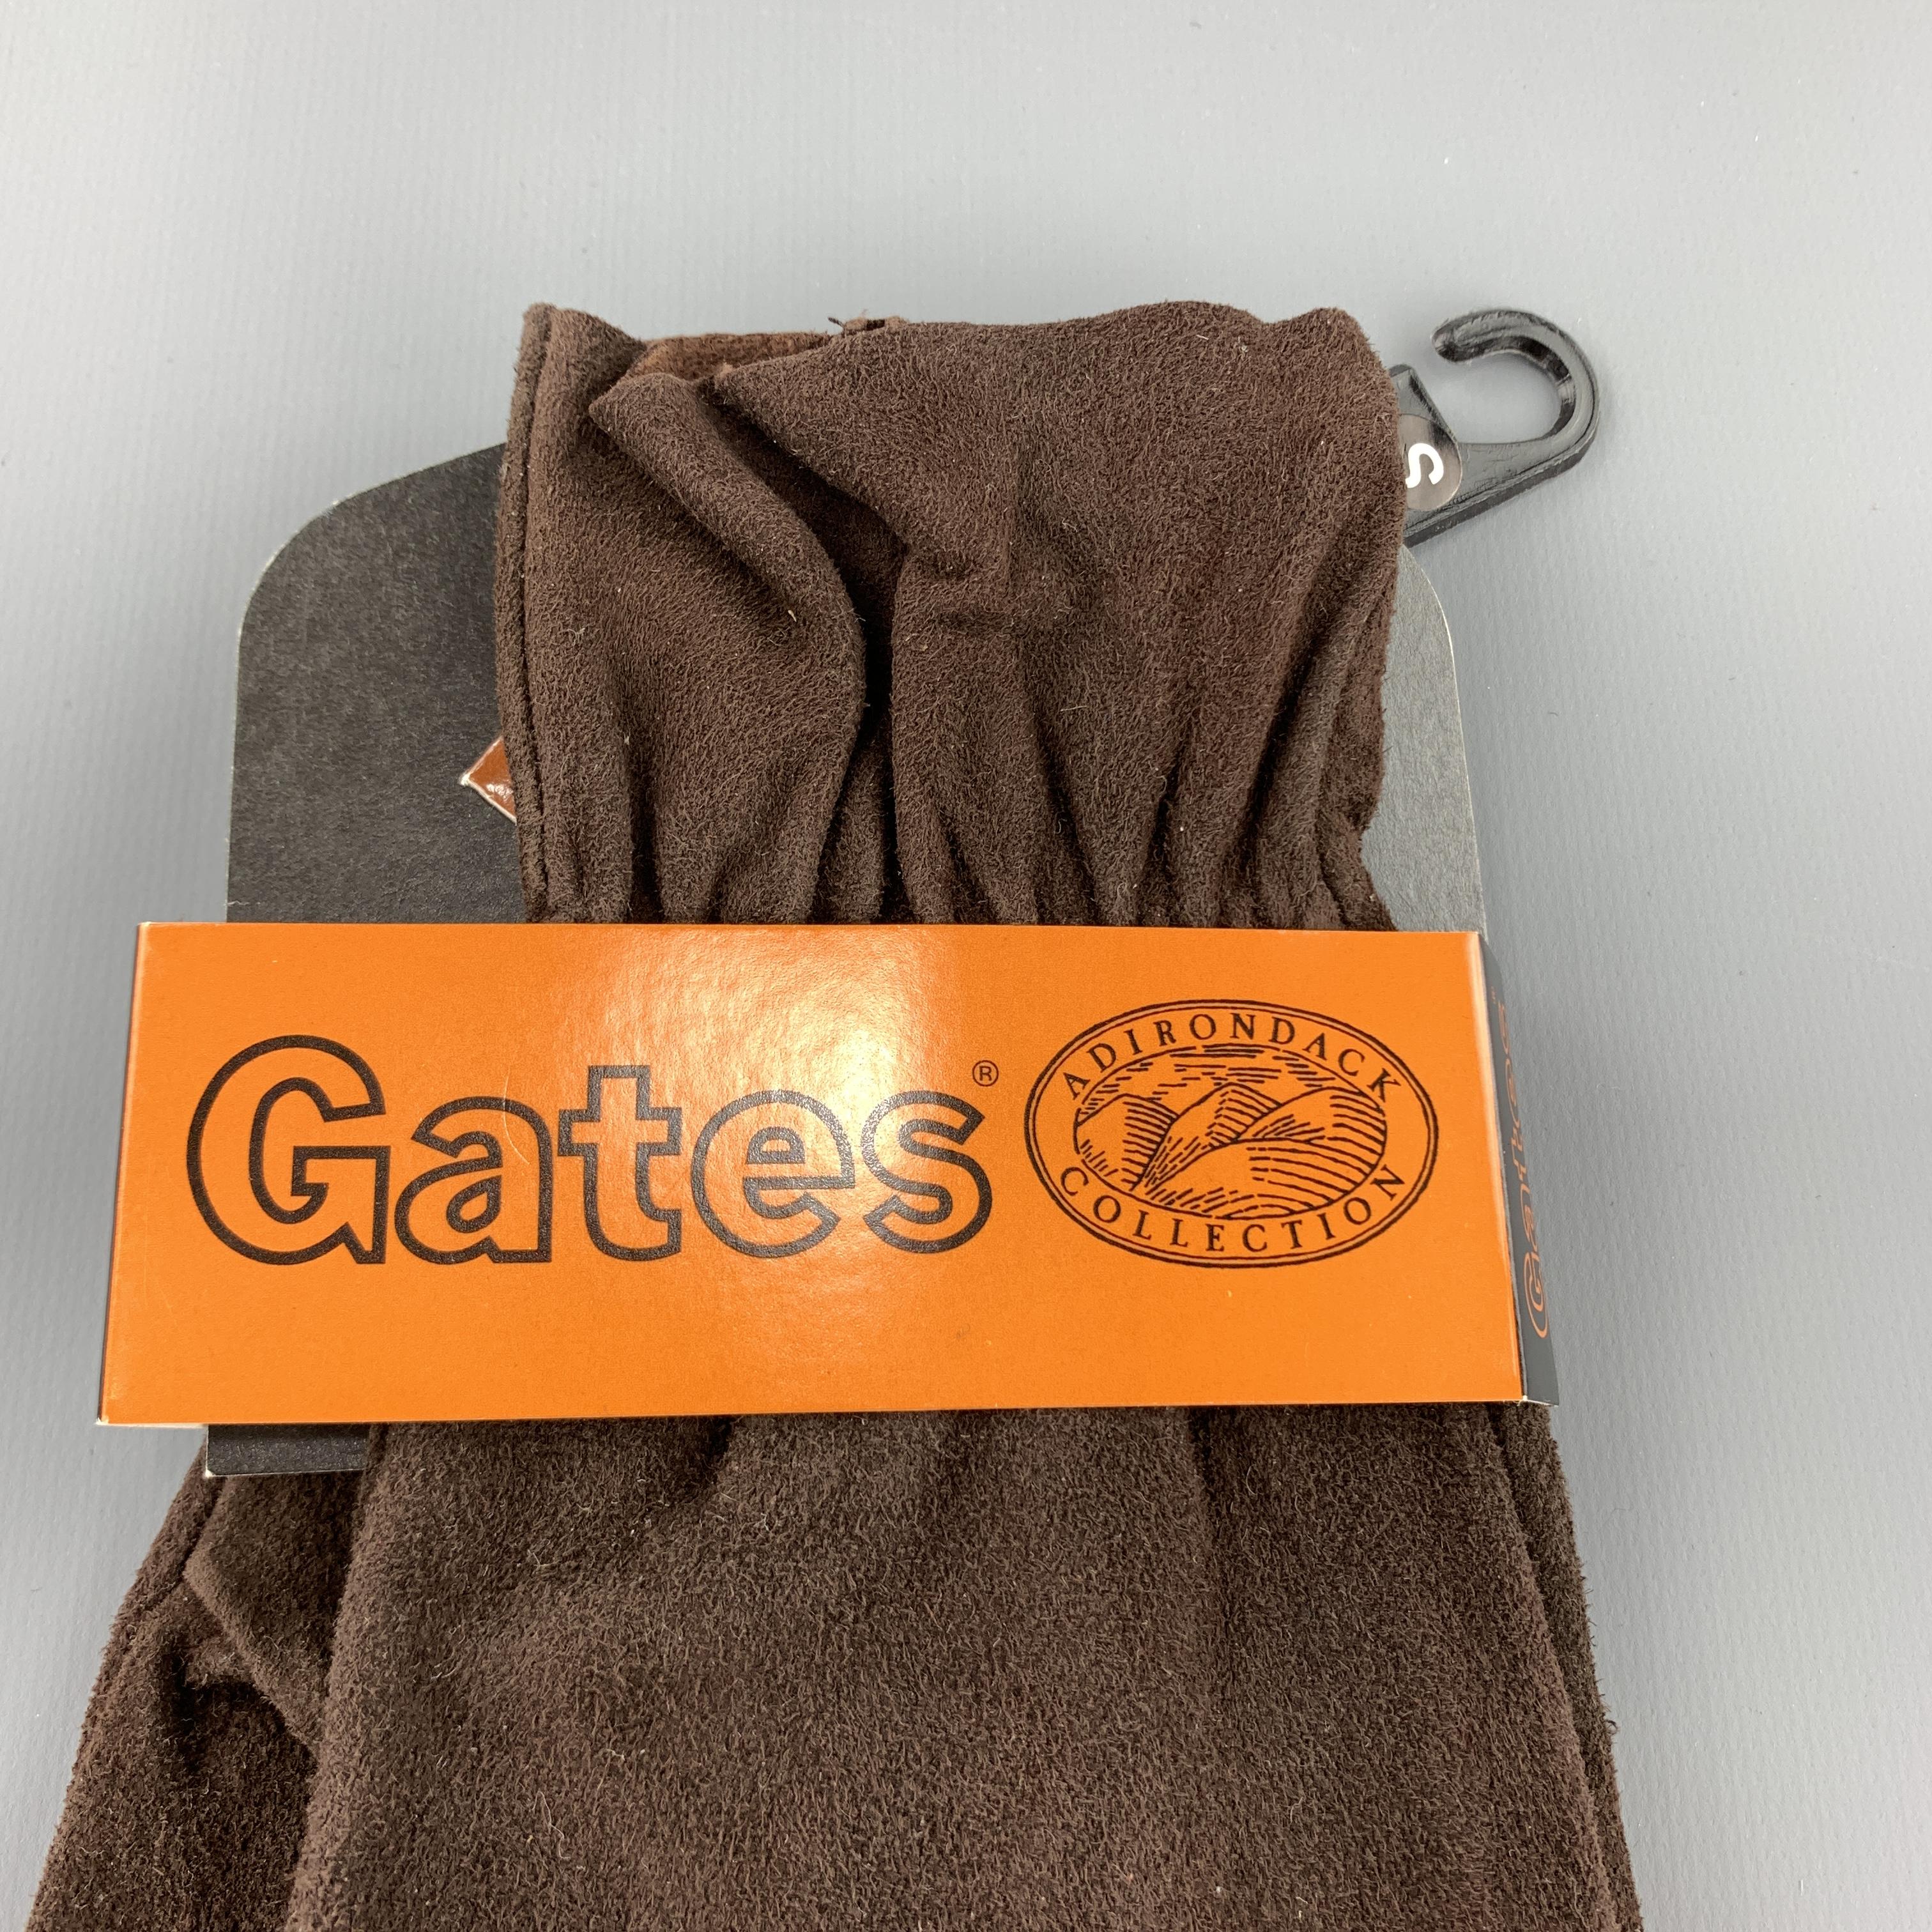 gates gloves company